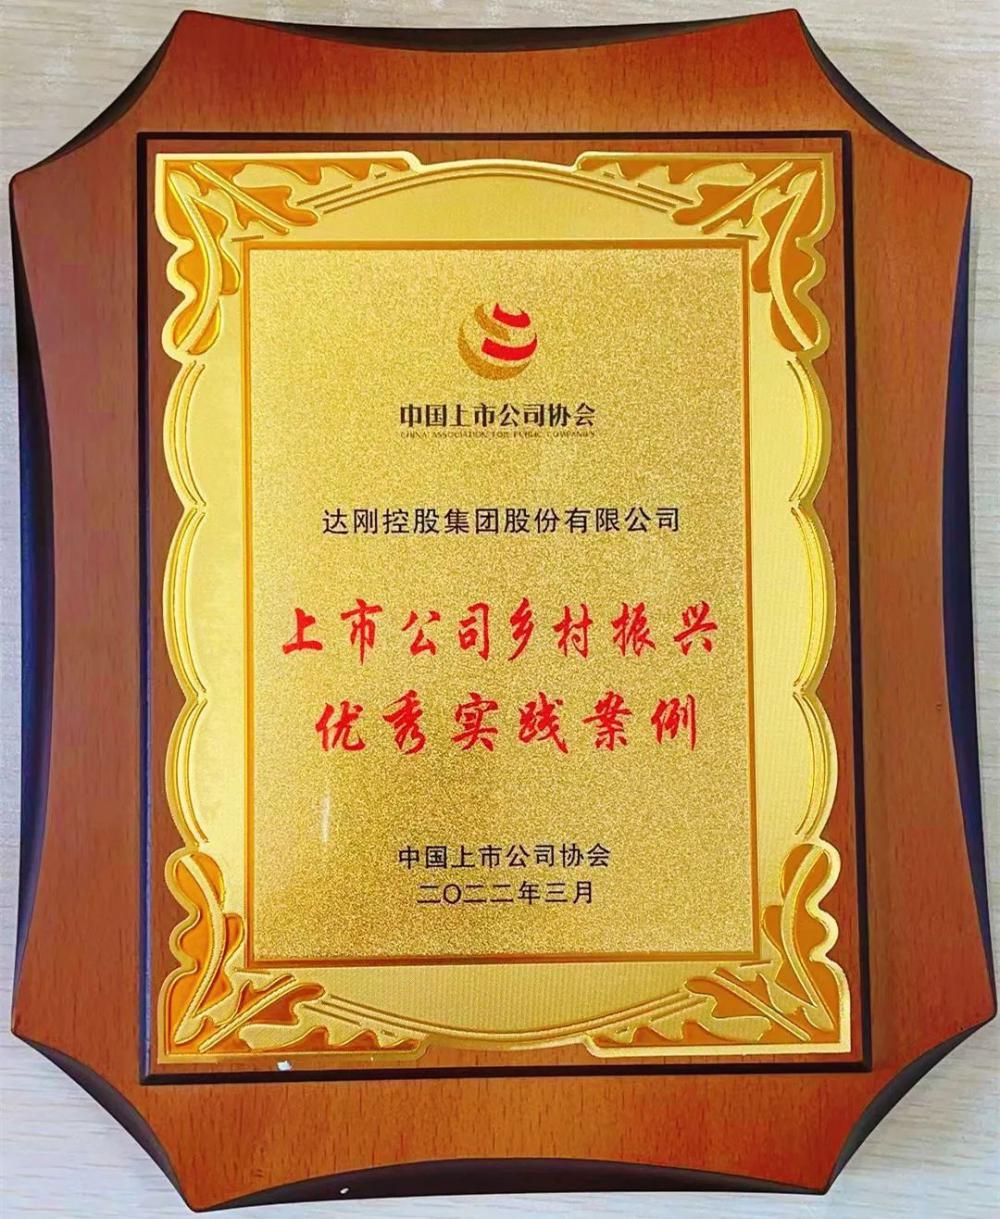 达刚控股集团荣获上市公司“金圆桌奖”、“乡村振兴优秀实践案例”双项殊荣